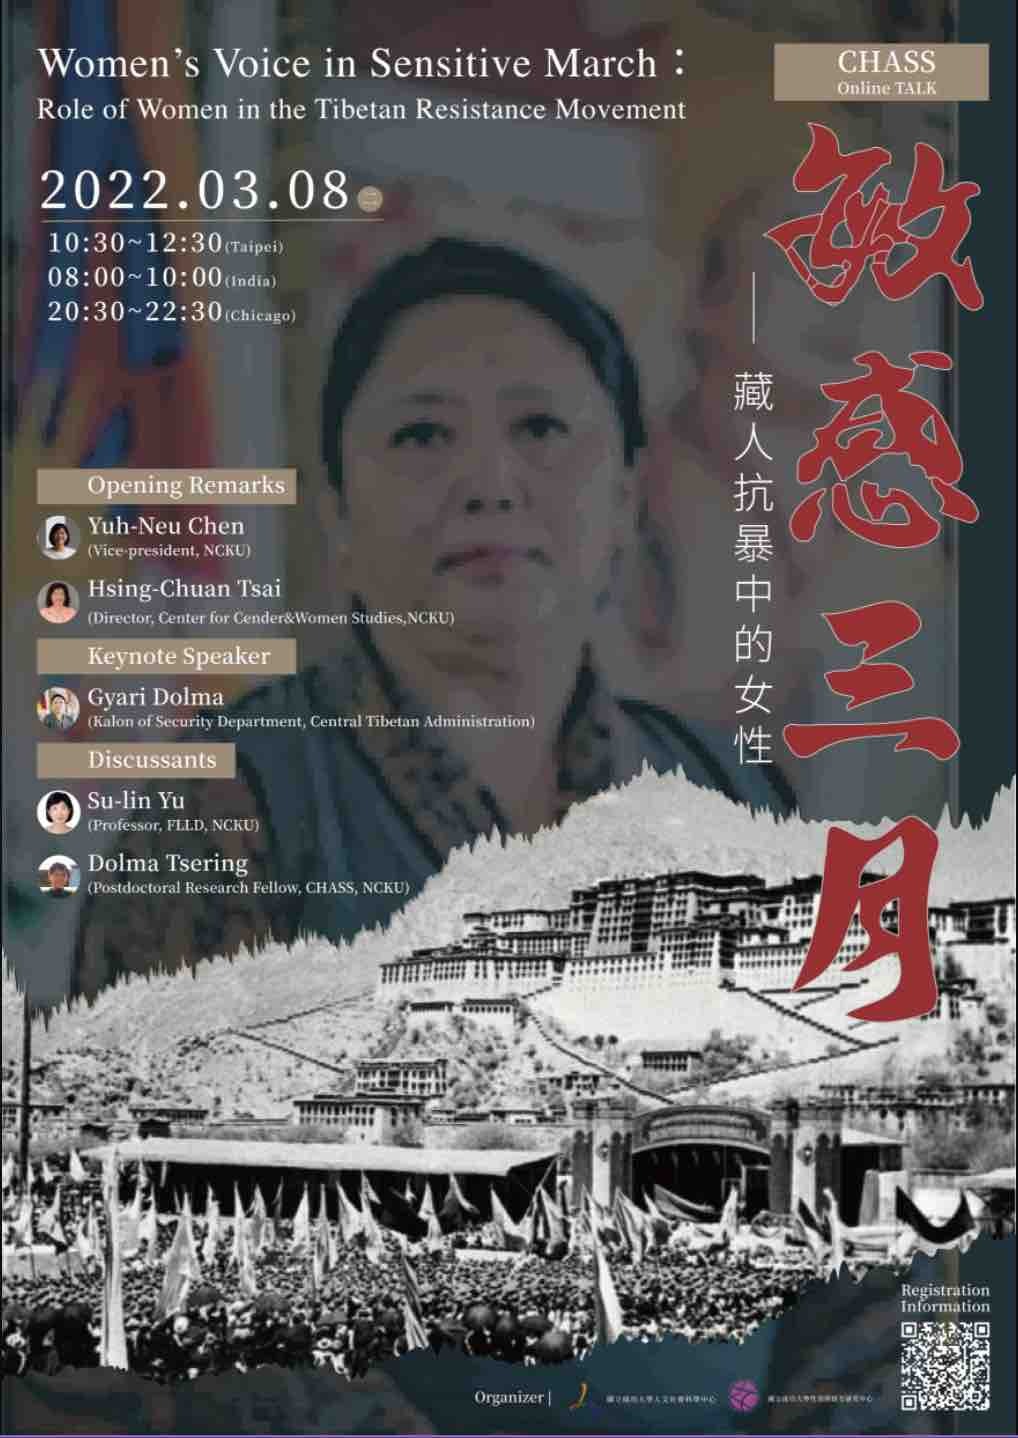 敏感三月——藏人抗暴運動中的女性